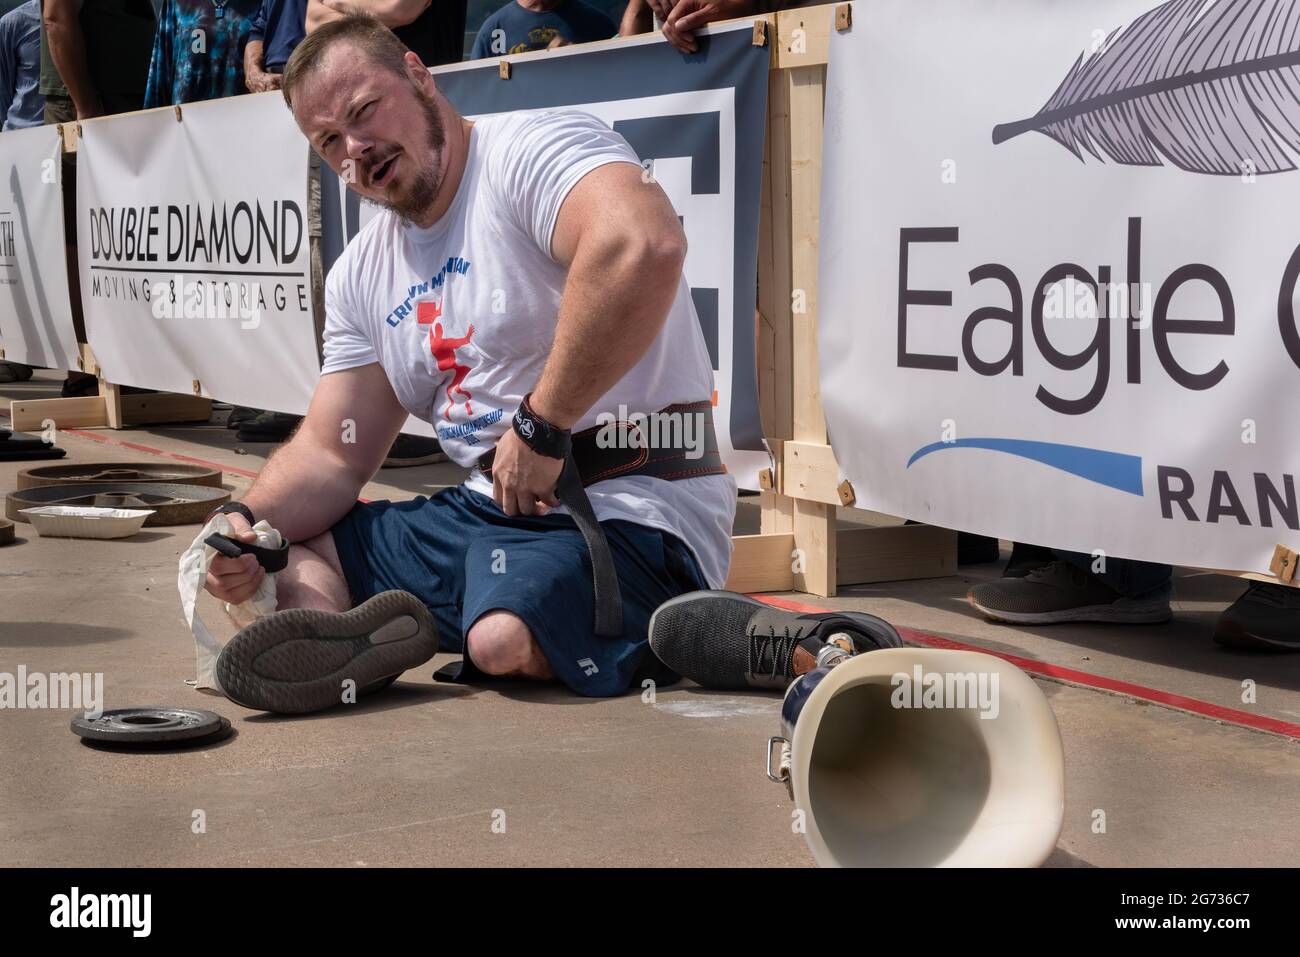 Sollevatore con disabilità guarda la fotocamera, ai margini del Crown Mountain Strongman Championship, la sua gamba protesica a terra accanto a lui. Foto Stock